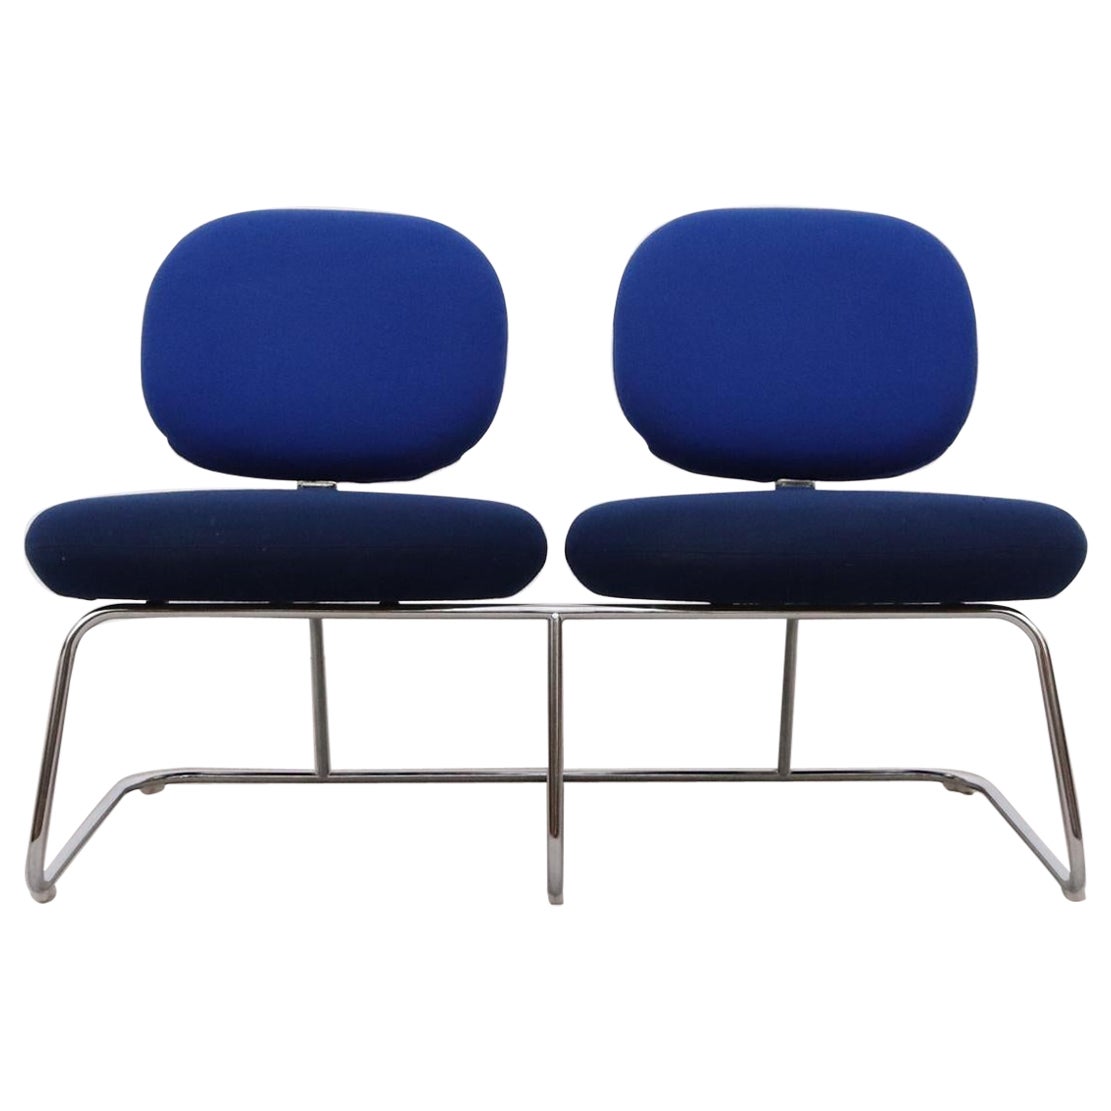 Jasper Morrison 2-Seat Blue Two-Toned "Vega" Bench for Artifort with Chrome Legs